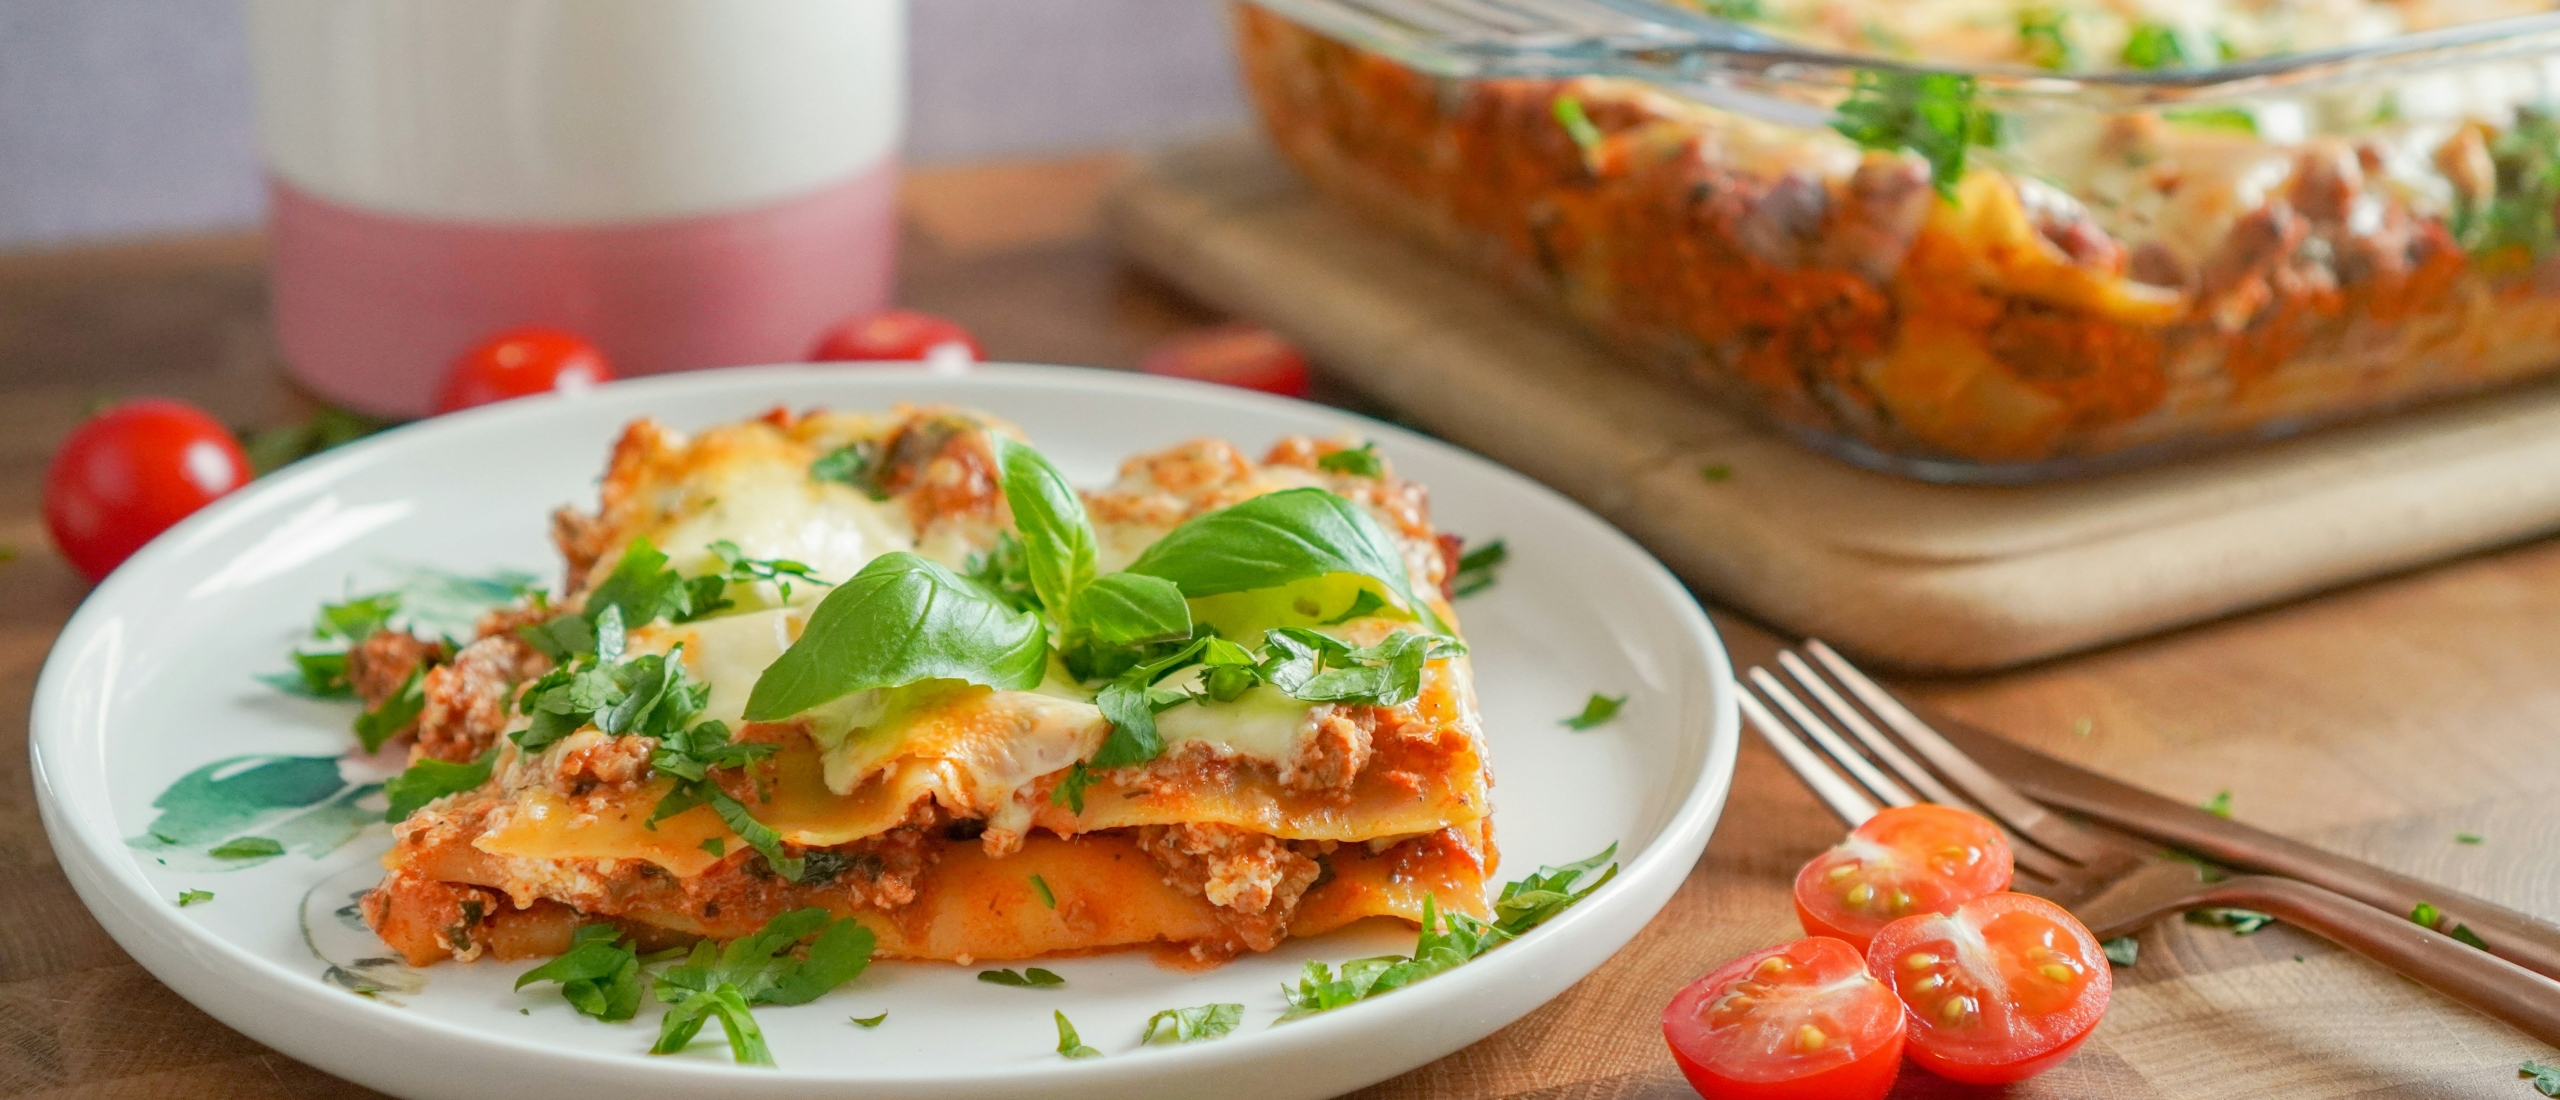 Heerlijke huisgemaakte Lasagne: Stap-voor-stap recept